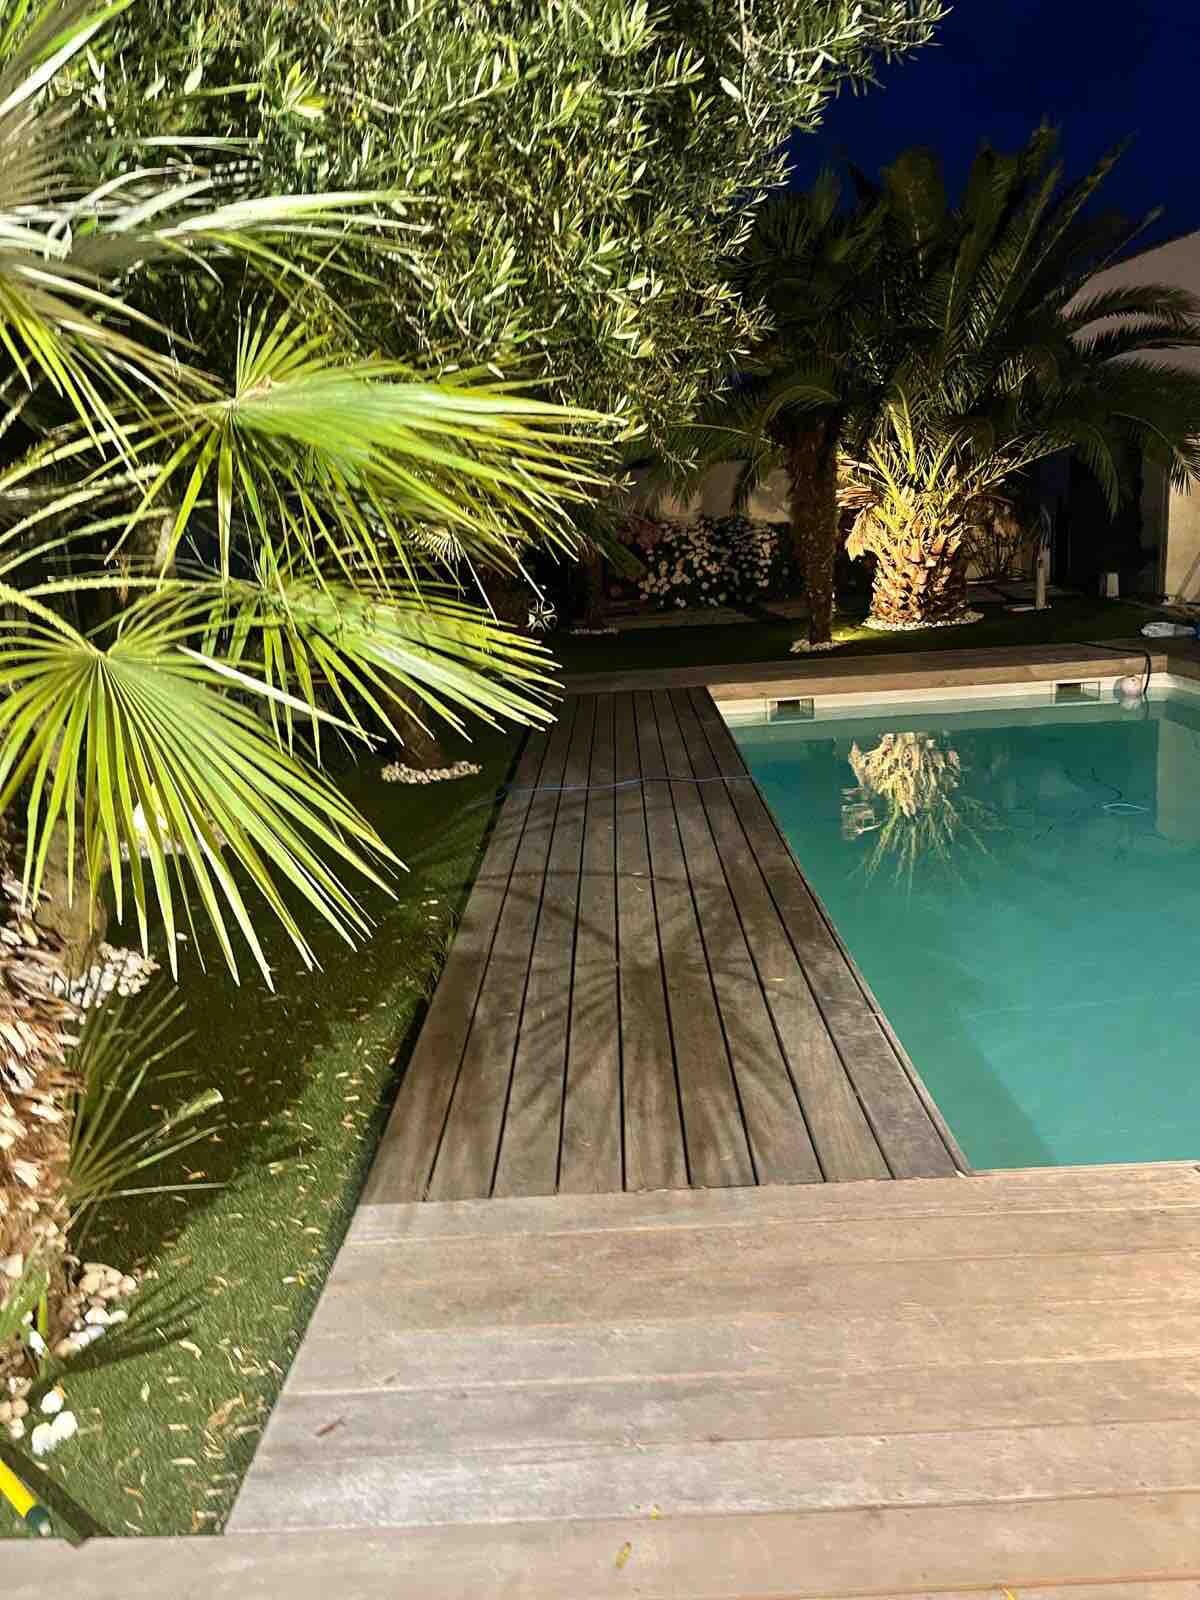 Villa de luxe avec piscine